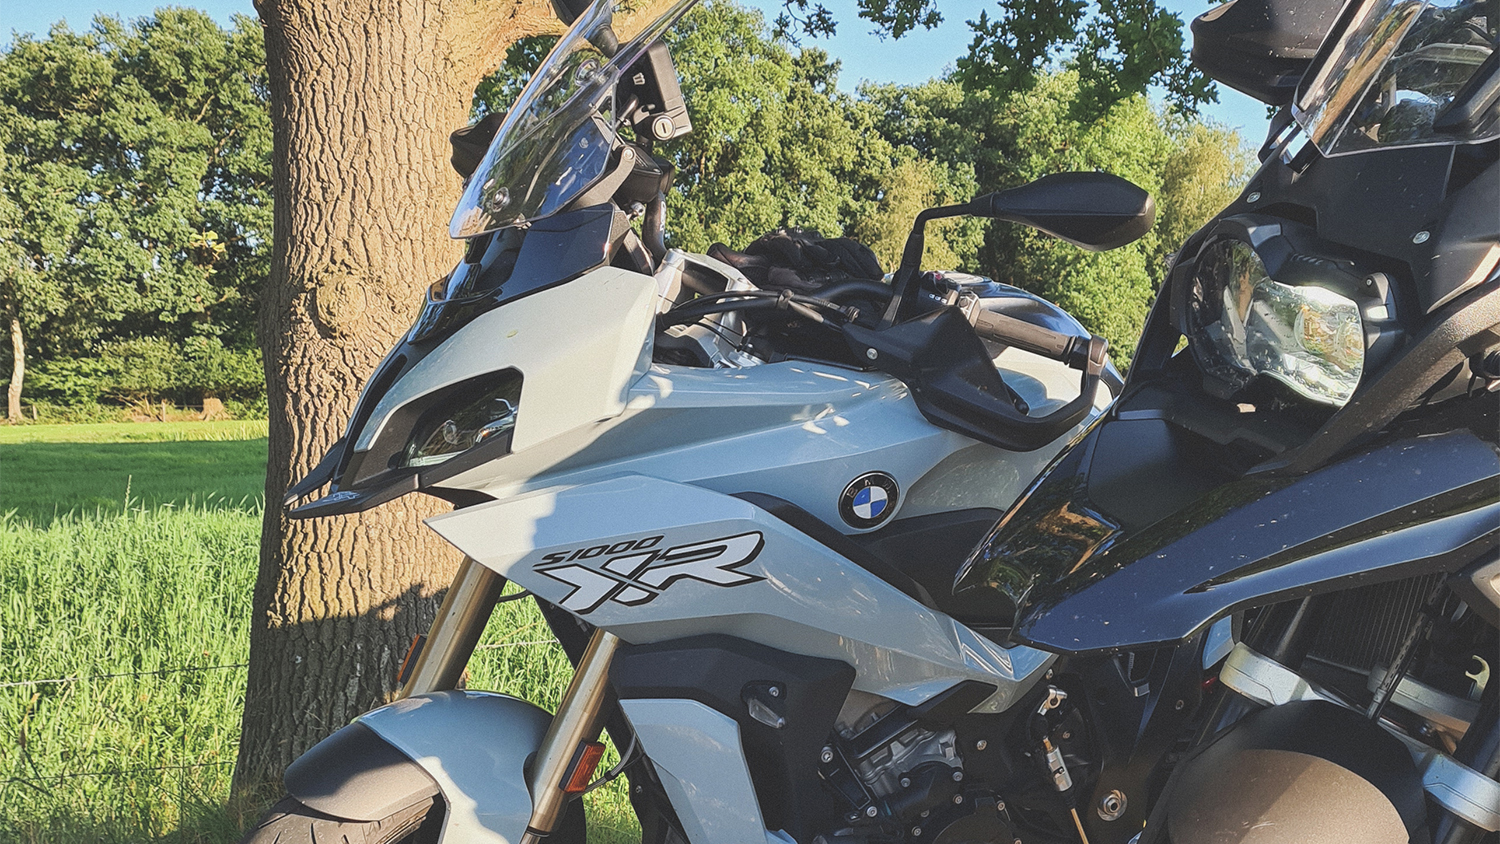 Motortest: Een week lang op de 2020 BMW S1000XR